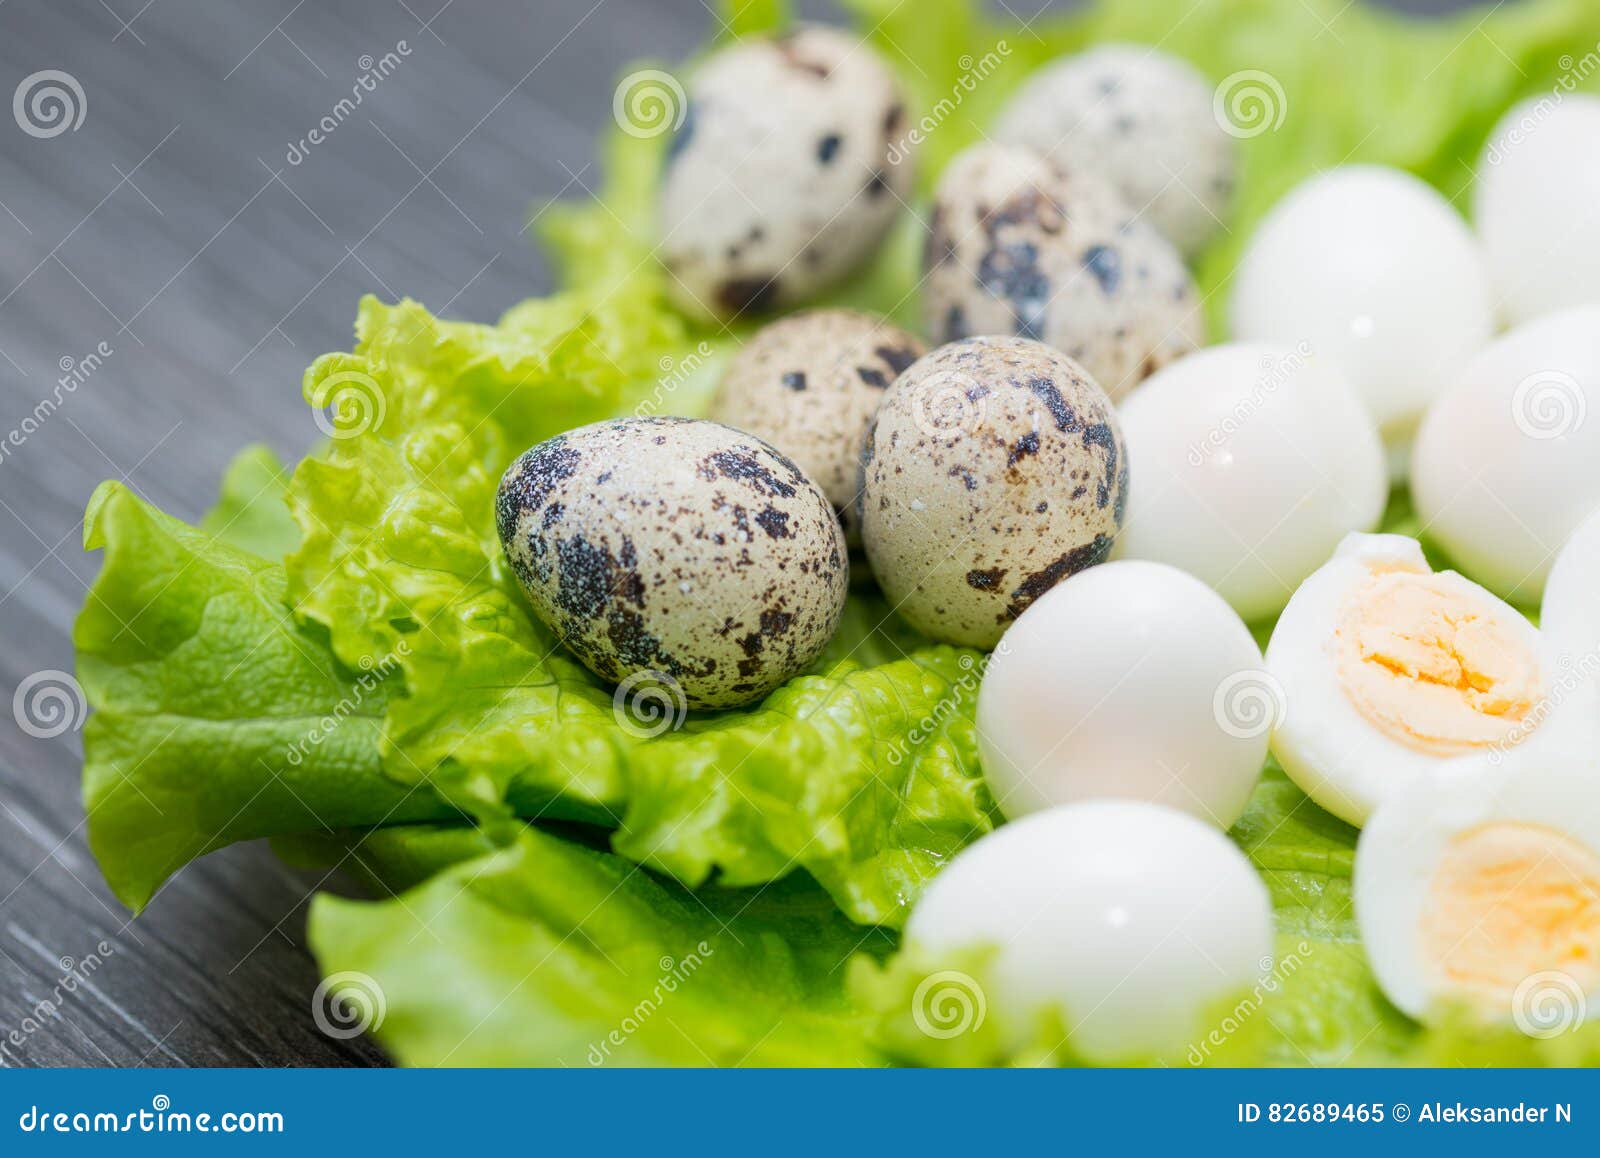 фото перепелиных и куриных яйцах